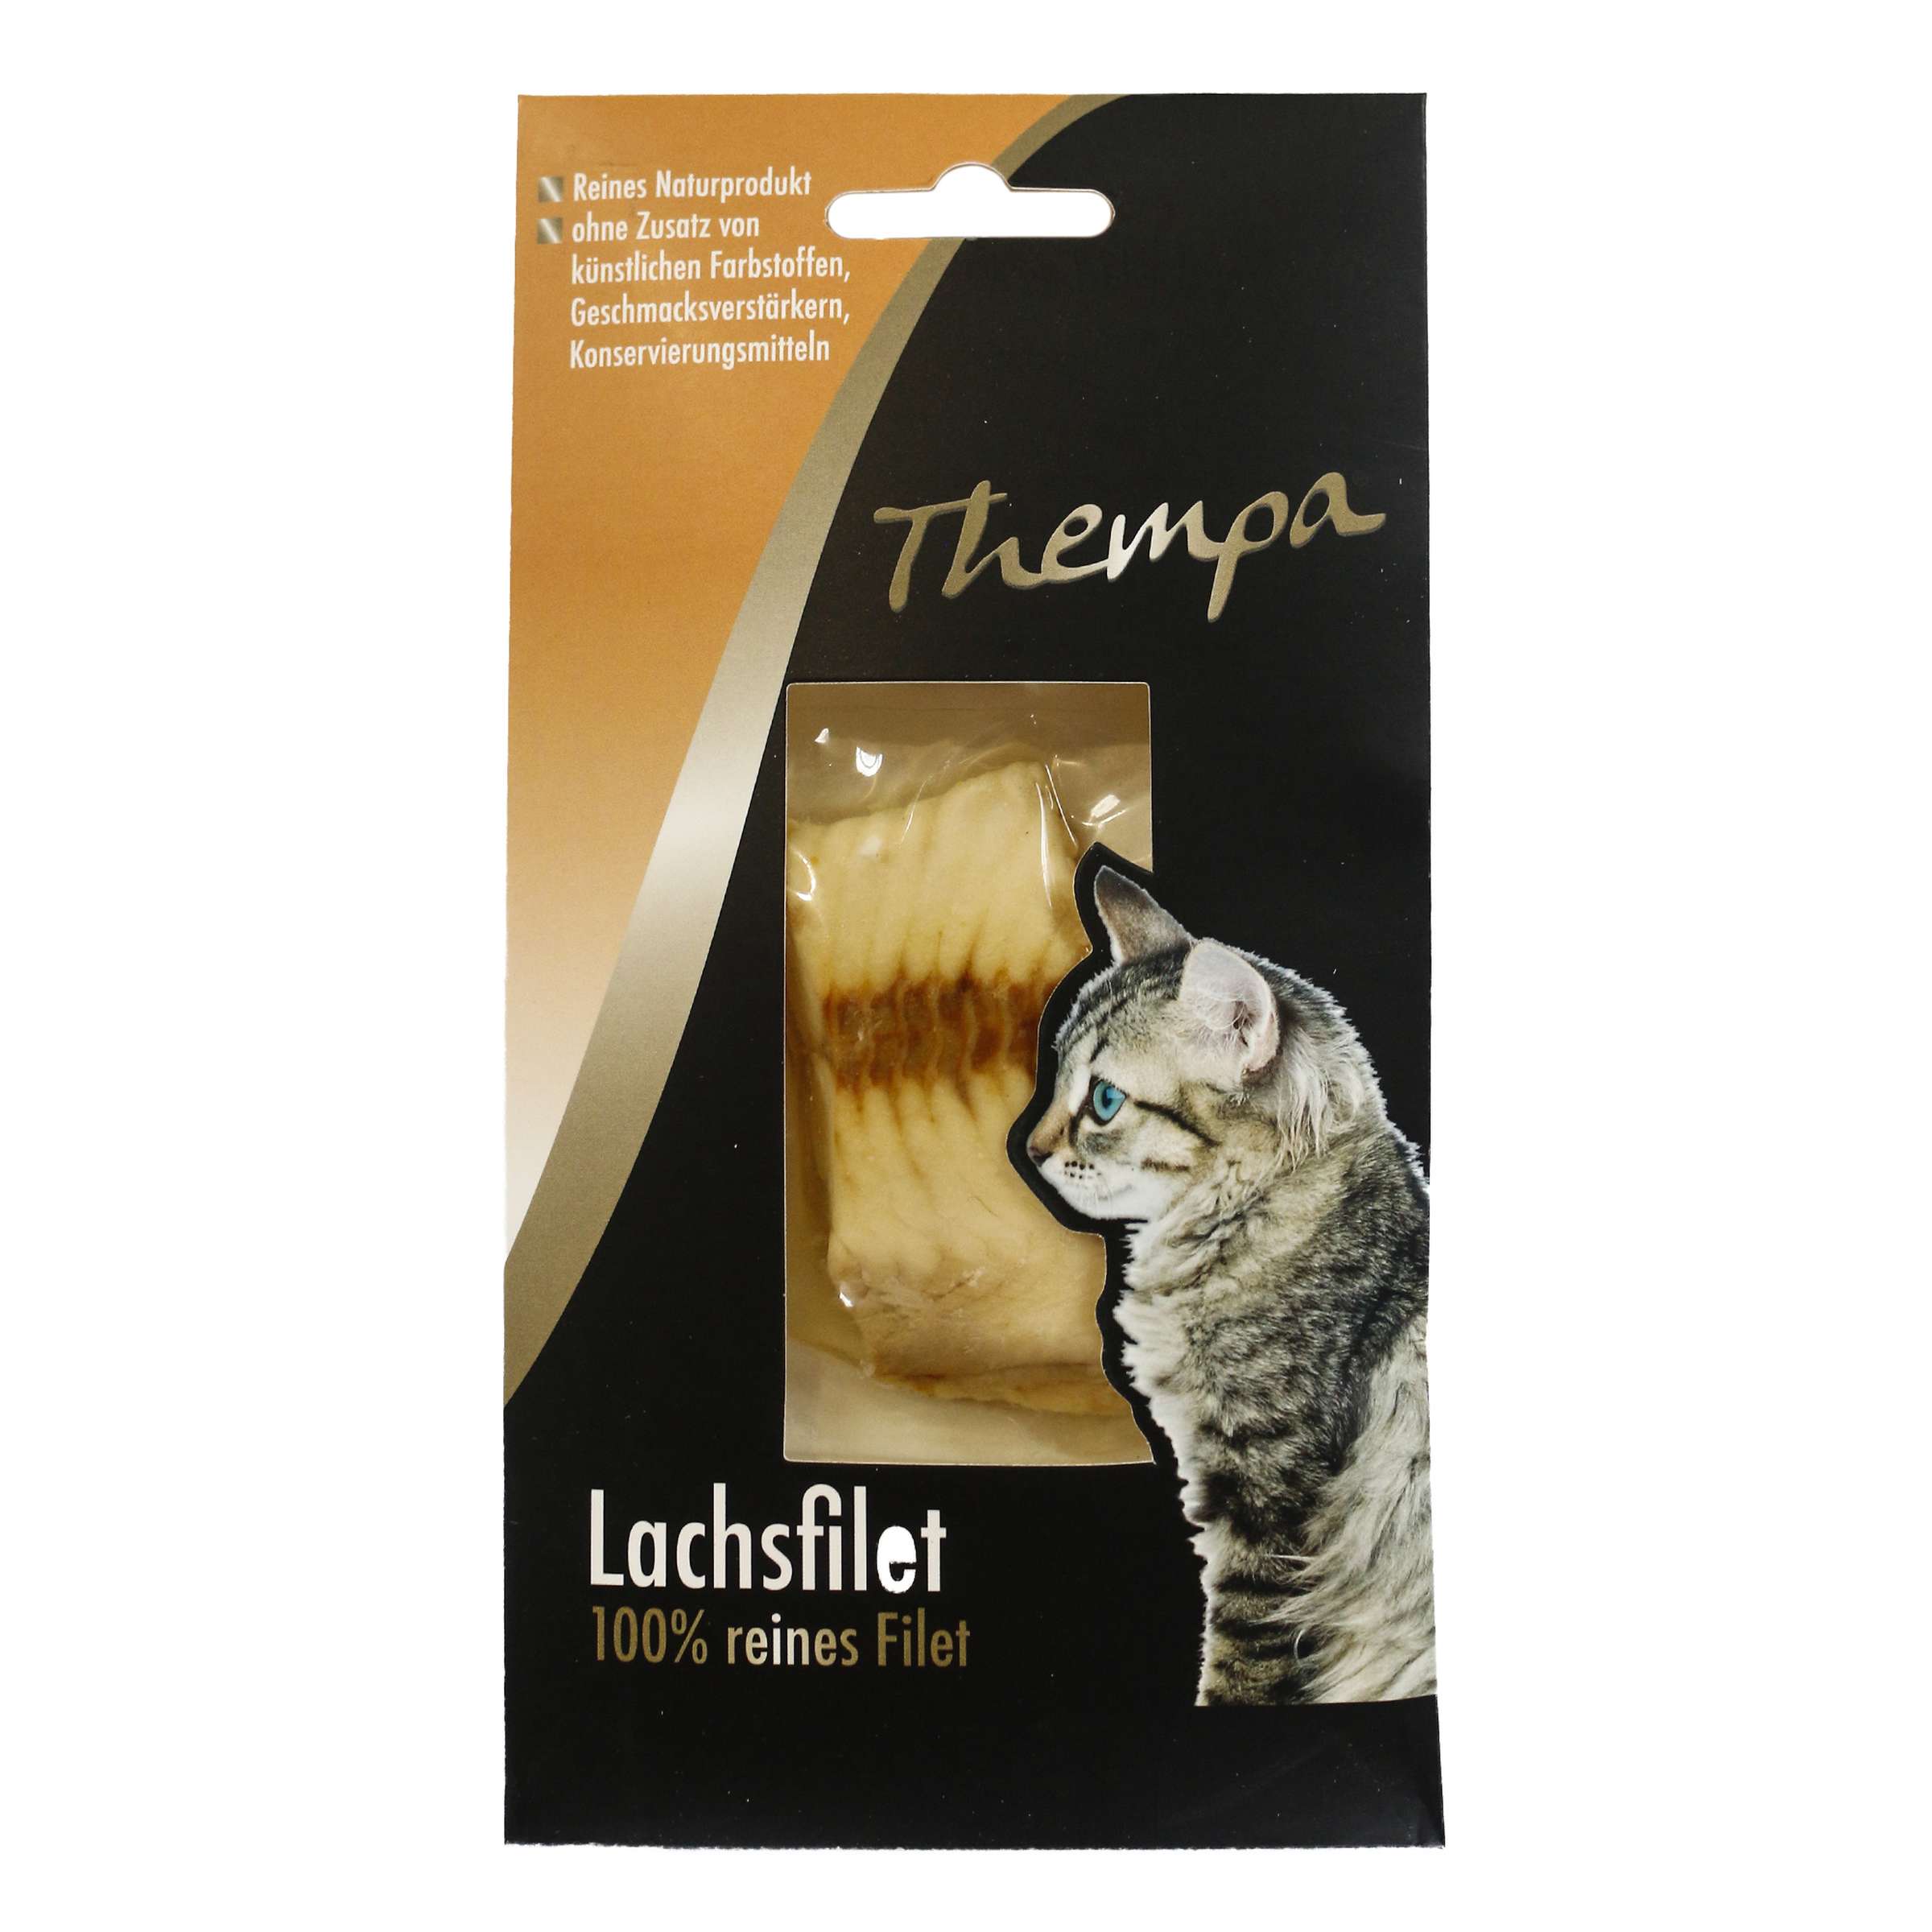 Thempa Lachsfilet fr Katzen 100% reinem Filet 30g